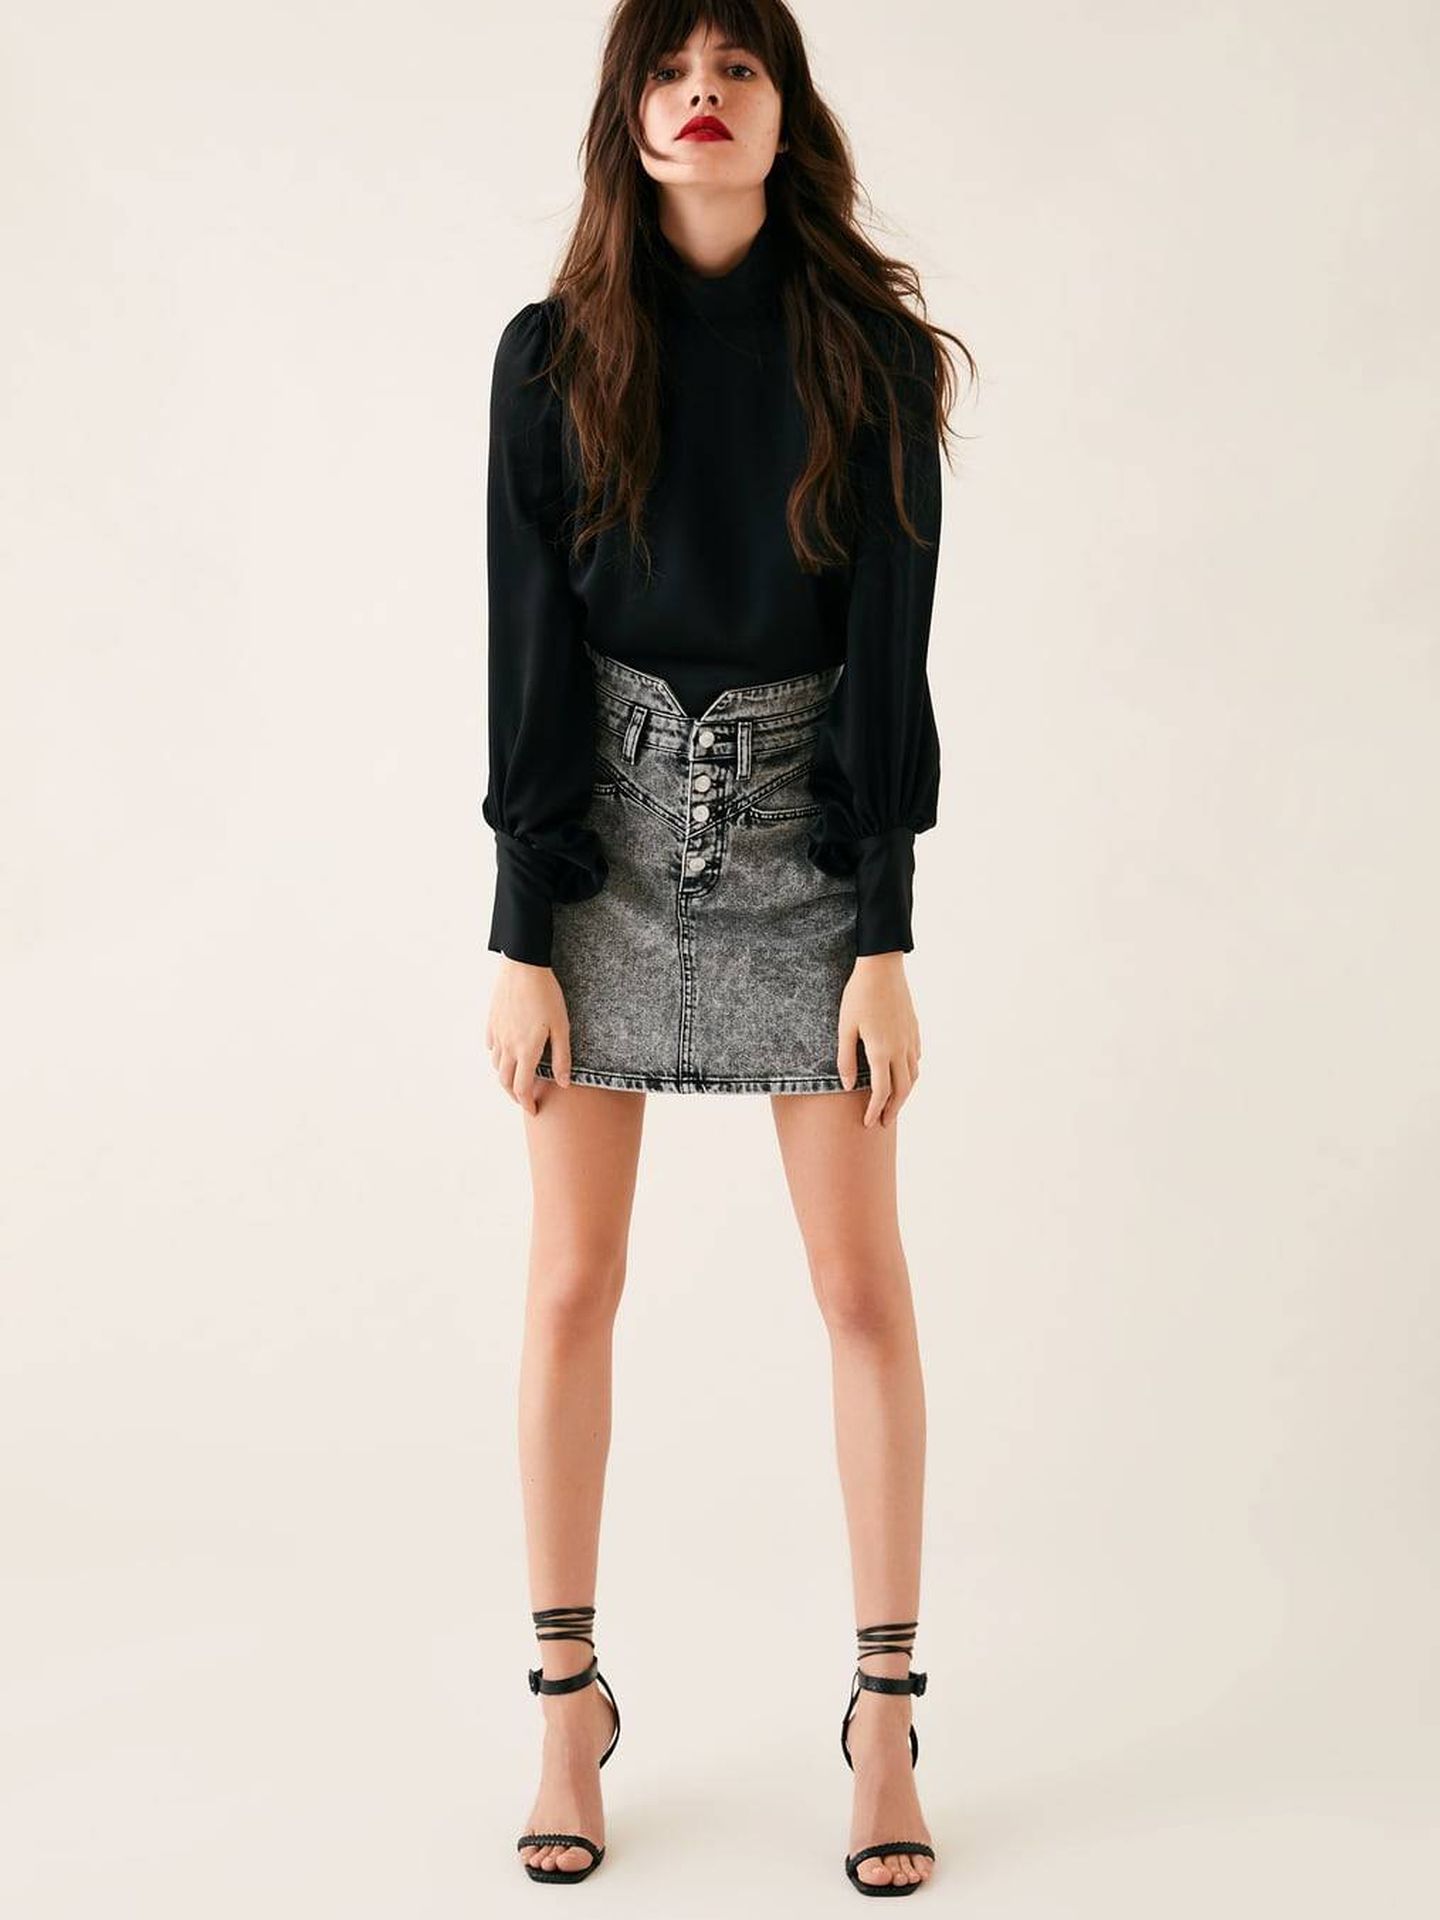 Esta minifalda de Zara vale 29,95 Euros.  (Cortesía)